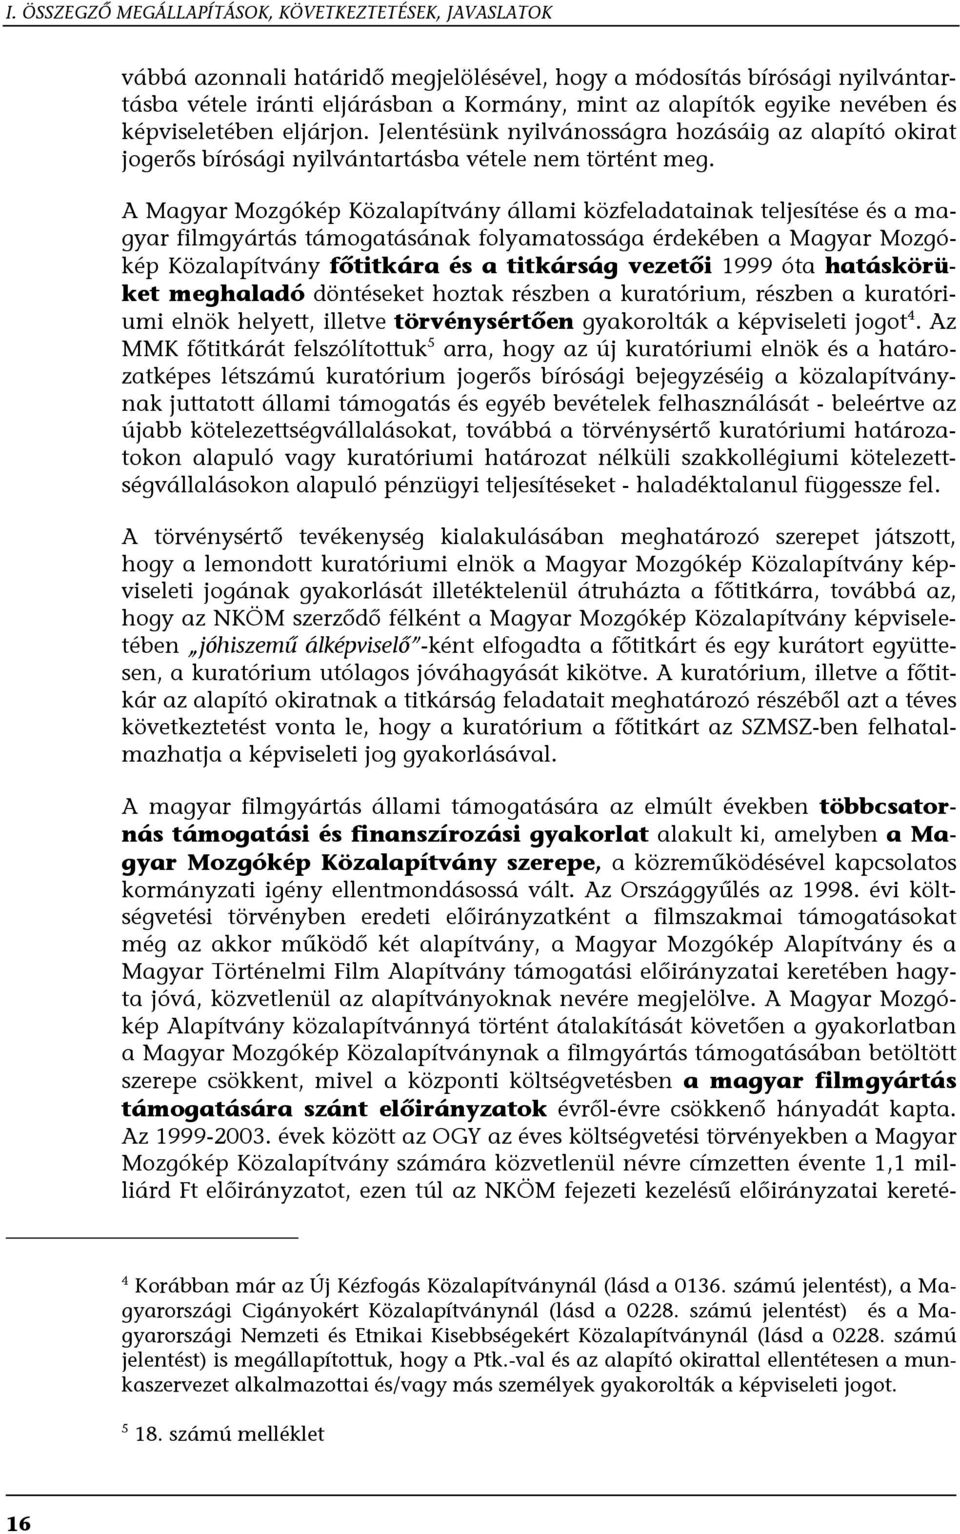 A Magyar Mozgókép Közalapítvány állami közfeladatainak teljesítése és a magyar filmgyártás támogatásának folyamatossága érdekében a Magyar Mozgókép Közalapítvány főtitkára és a titkárság vezetői 1999